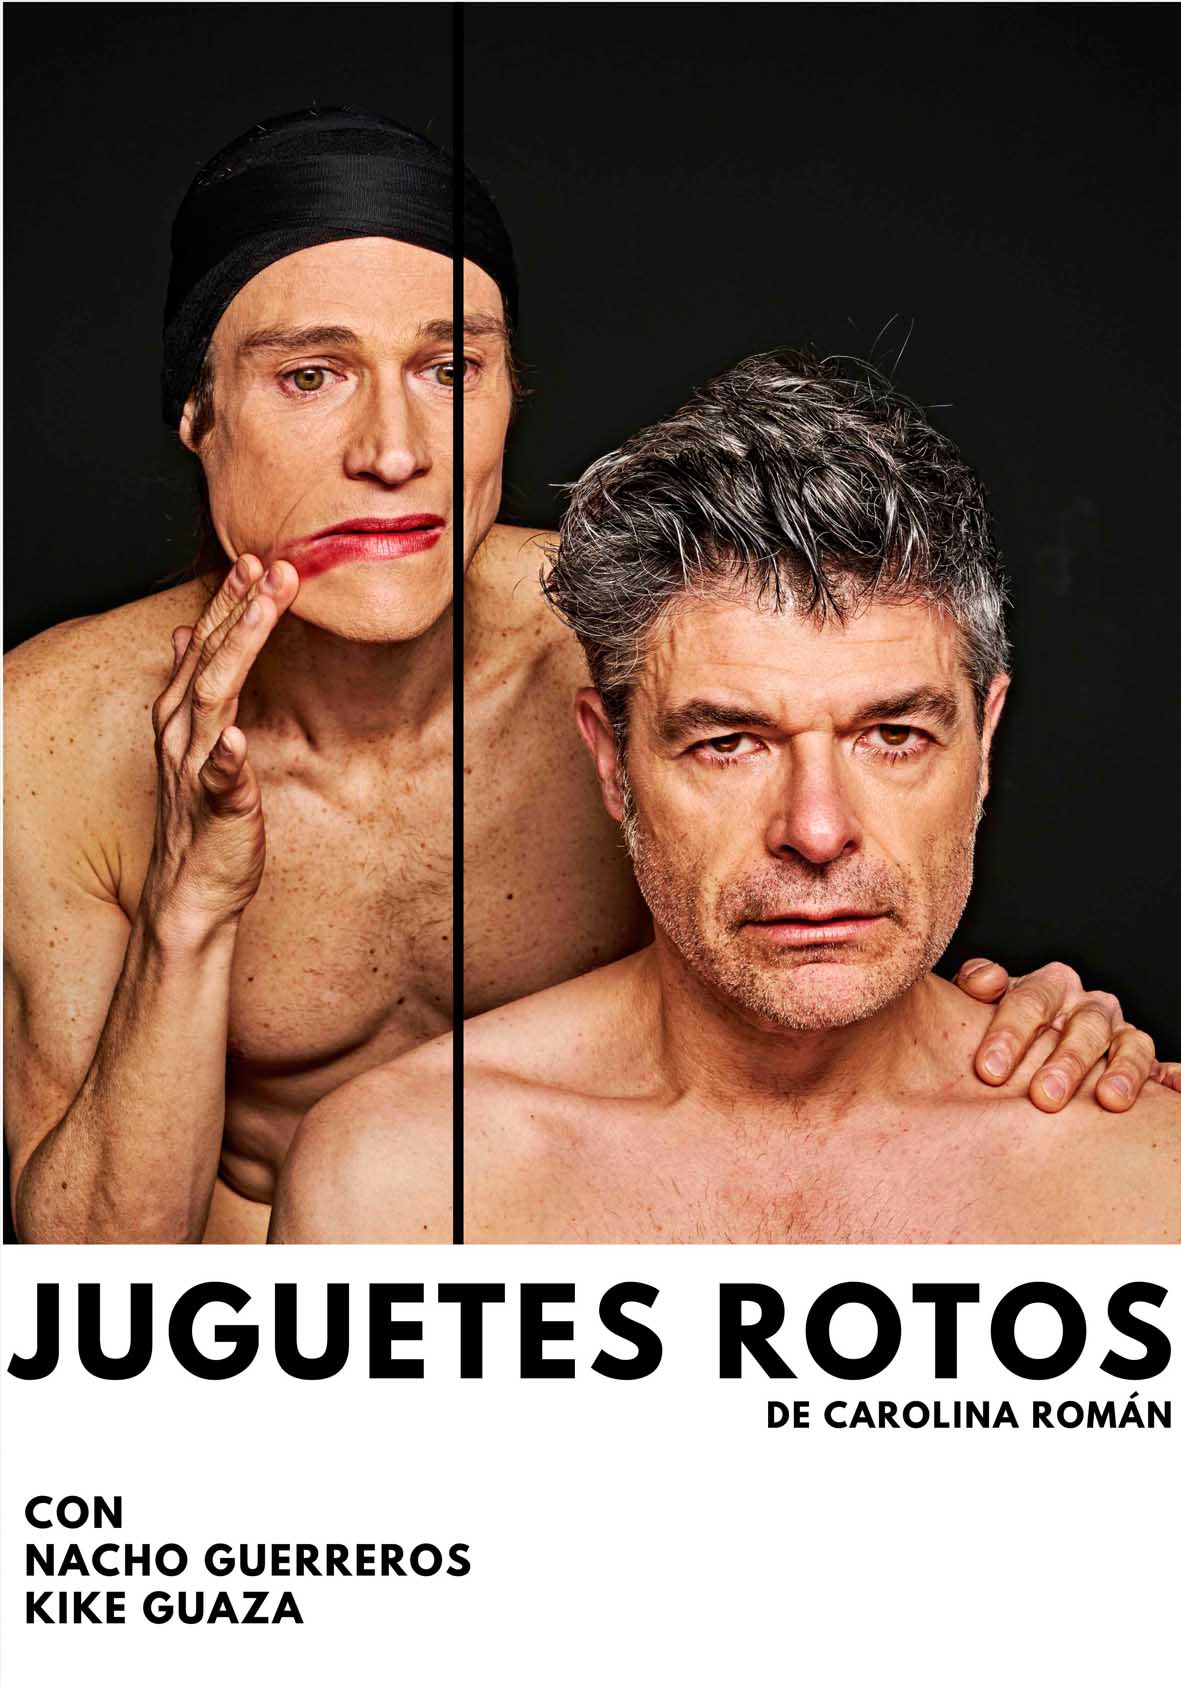 JUGUETES ROTOS con Nacho Guerreros y Kike Guaza